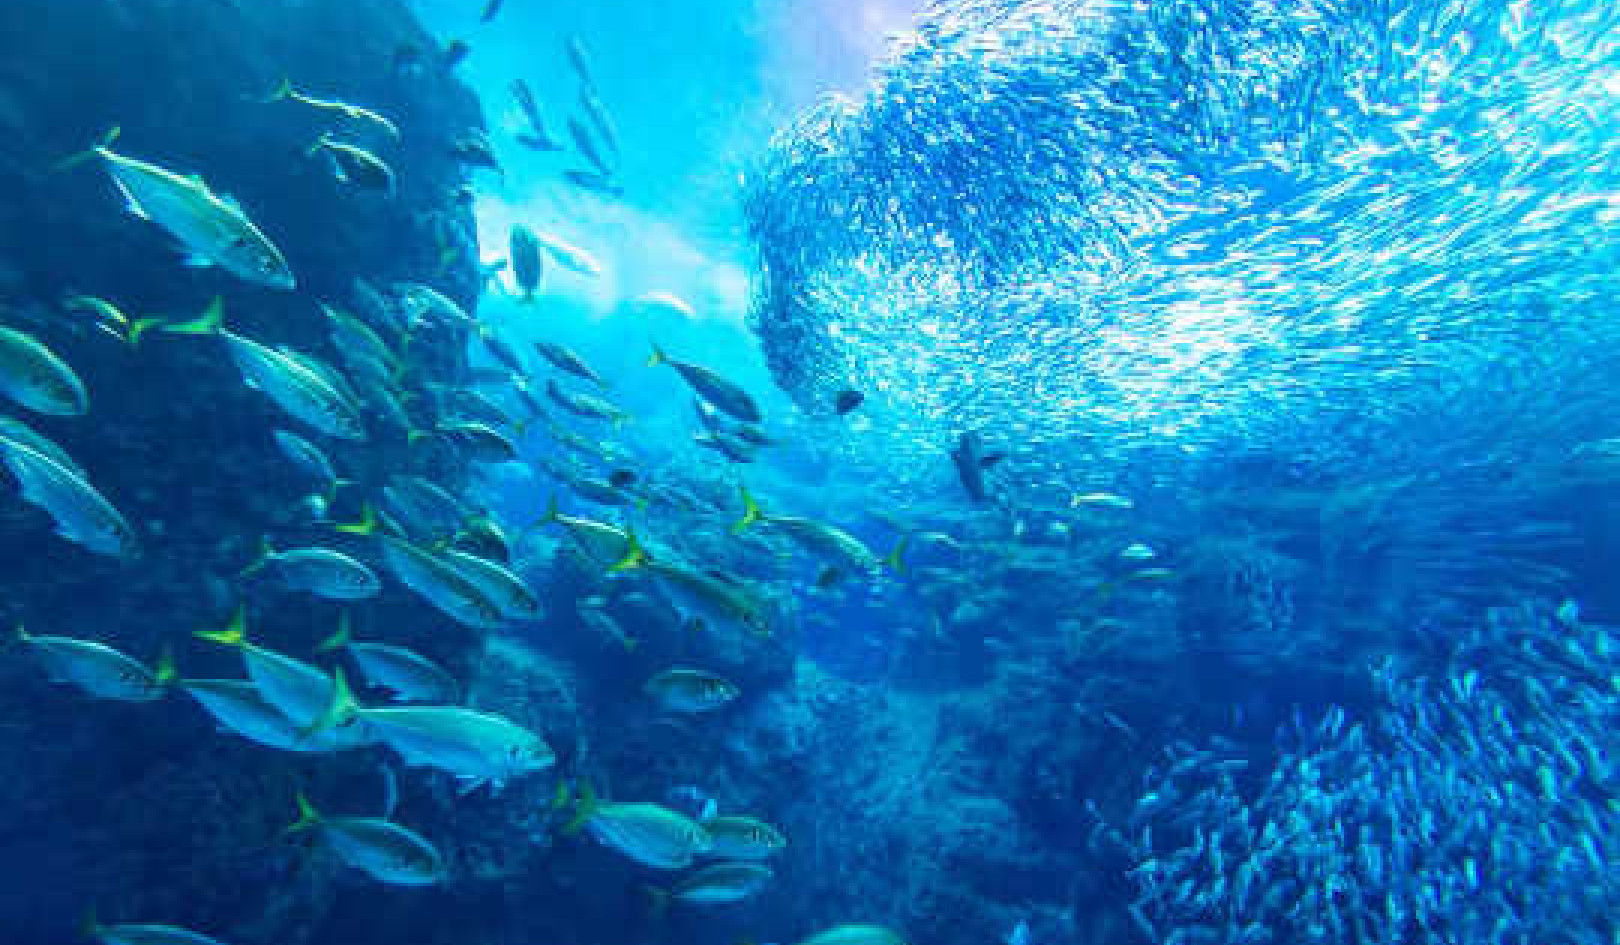 Zdrowie oceanu zależy od ekonomii i idei ryb nieskończoności